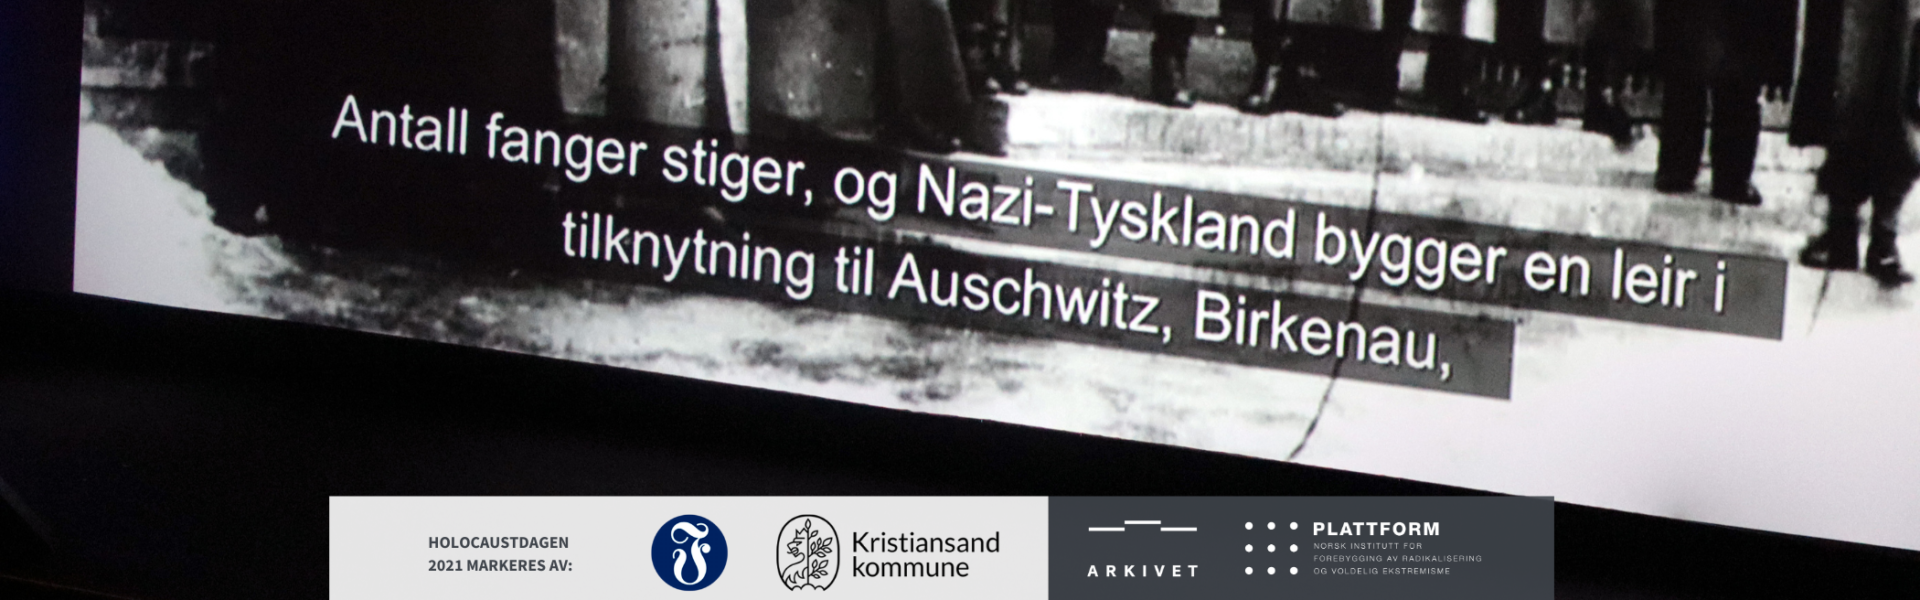 Nettside Event Holocaustdagen ettermiddag 27 01 21 1